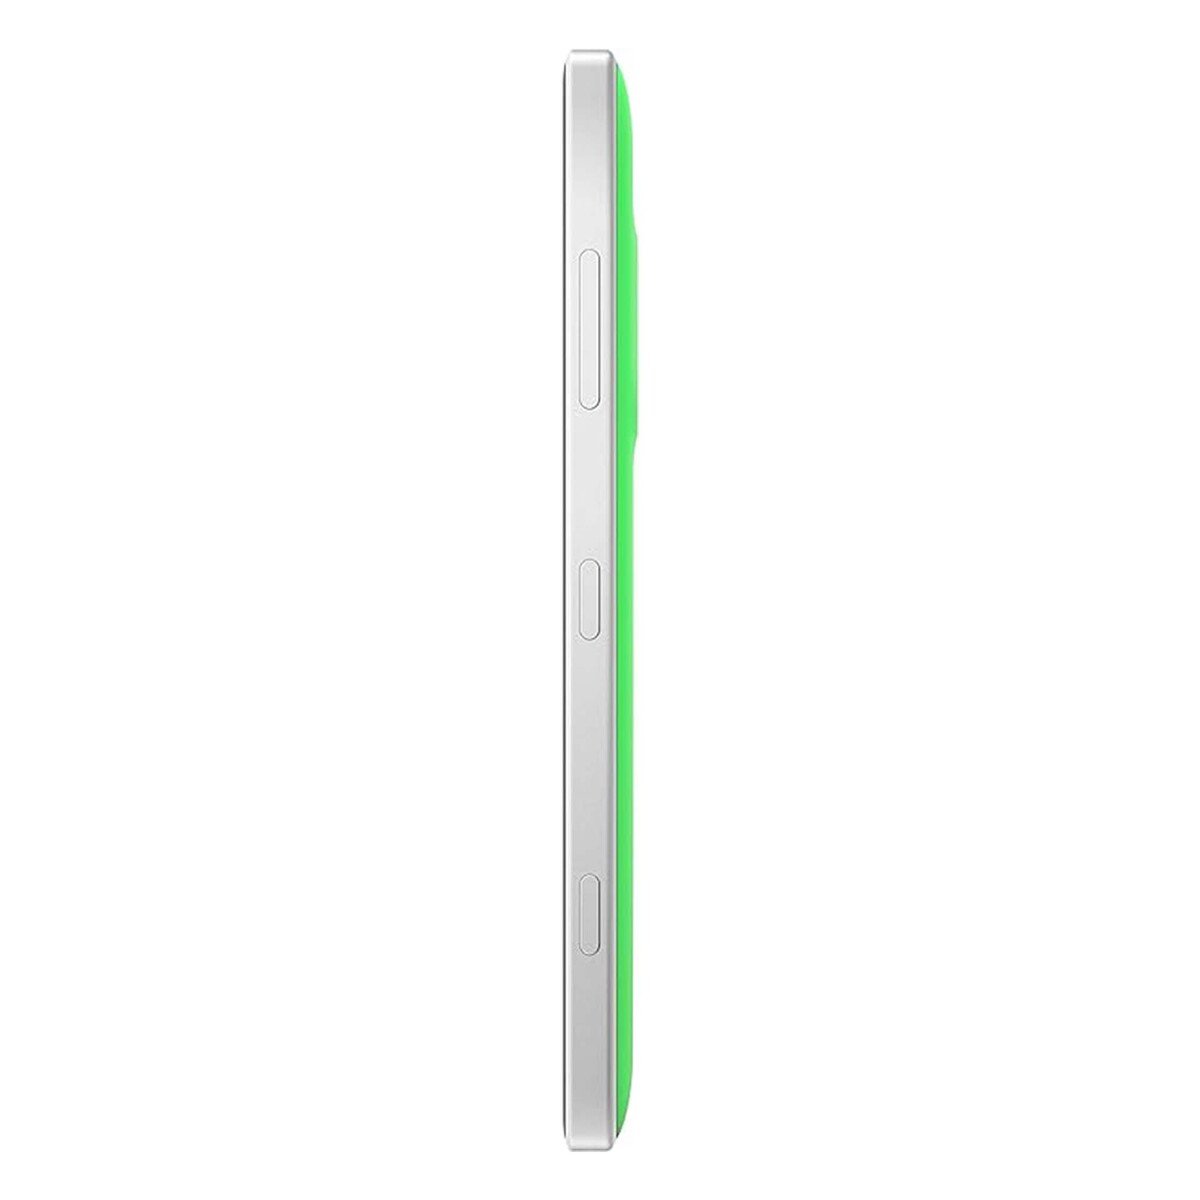 Nokia Lumia 830 Green